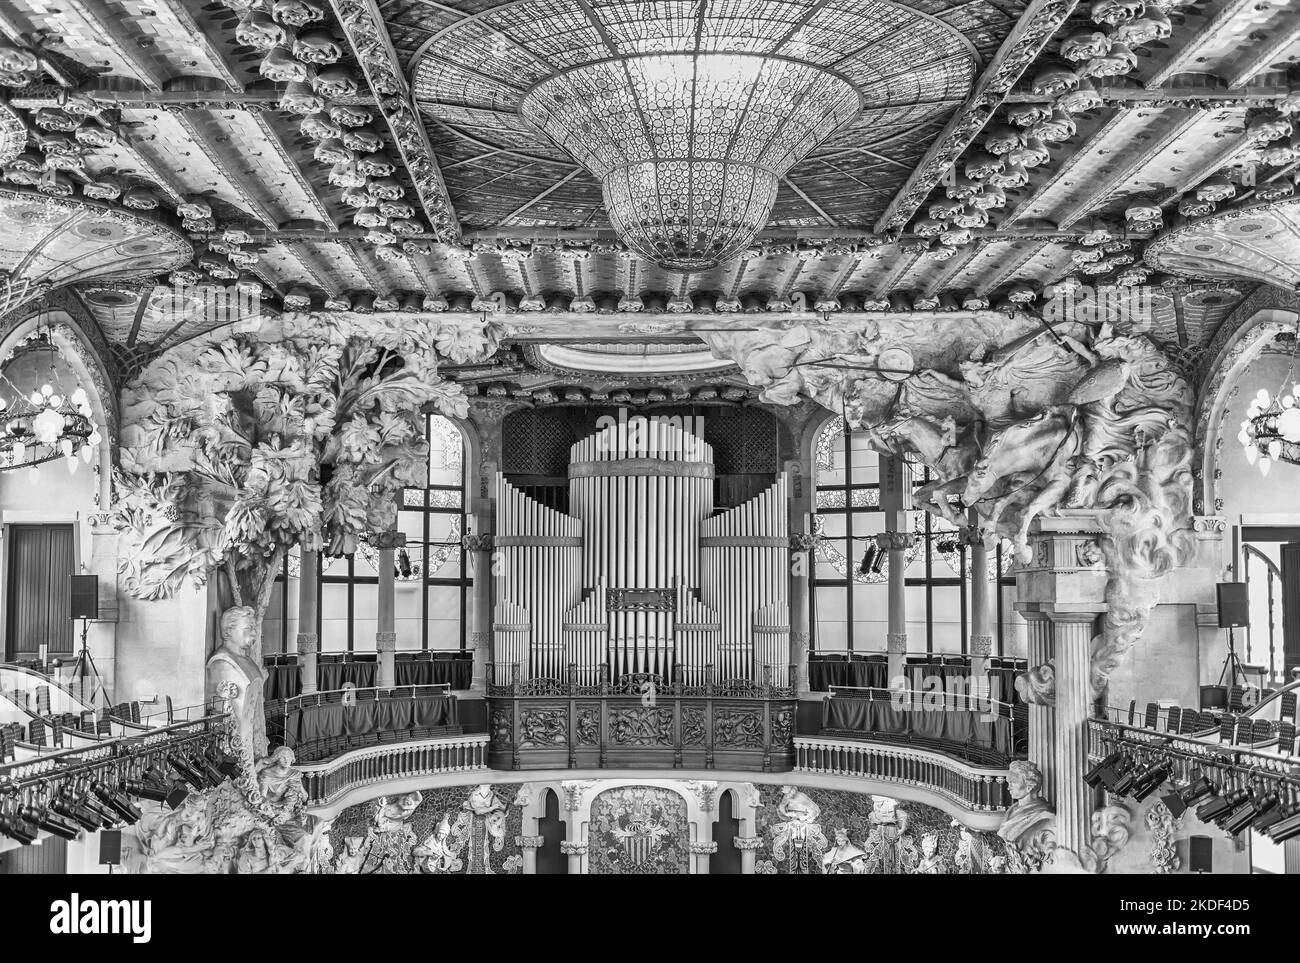 BARCELONE - AOÛT 8 : intérieur du Palau de la Musica Catalana, salle de concert moderniste conçue par l'architecte Lluis Domenech i Montaner à Barcelone Banque D'Images